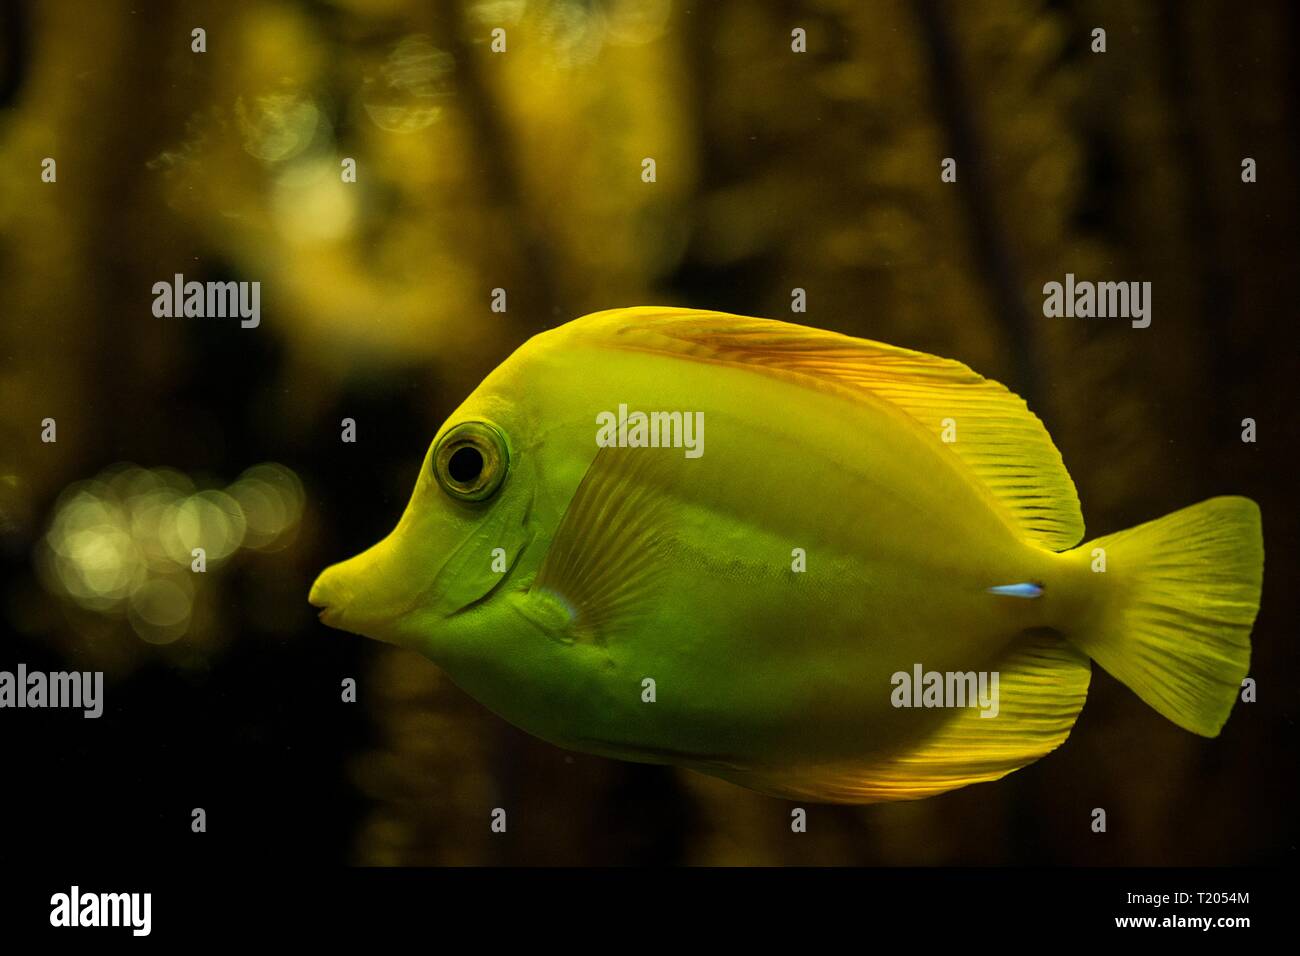 Tang, Zebrasoma flavescens (jaune), des poissons de récifs coralliens, les poissons marins d'eau salée, beau poisson jaune avec les coraux tropicaux en arrière-plan, aquarium, wallp Banque D'Images